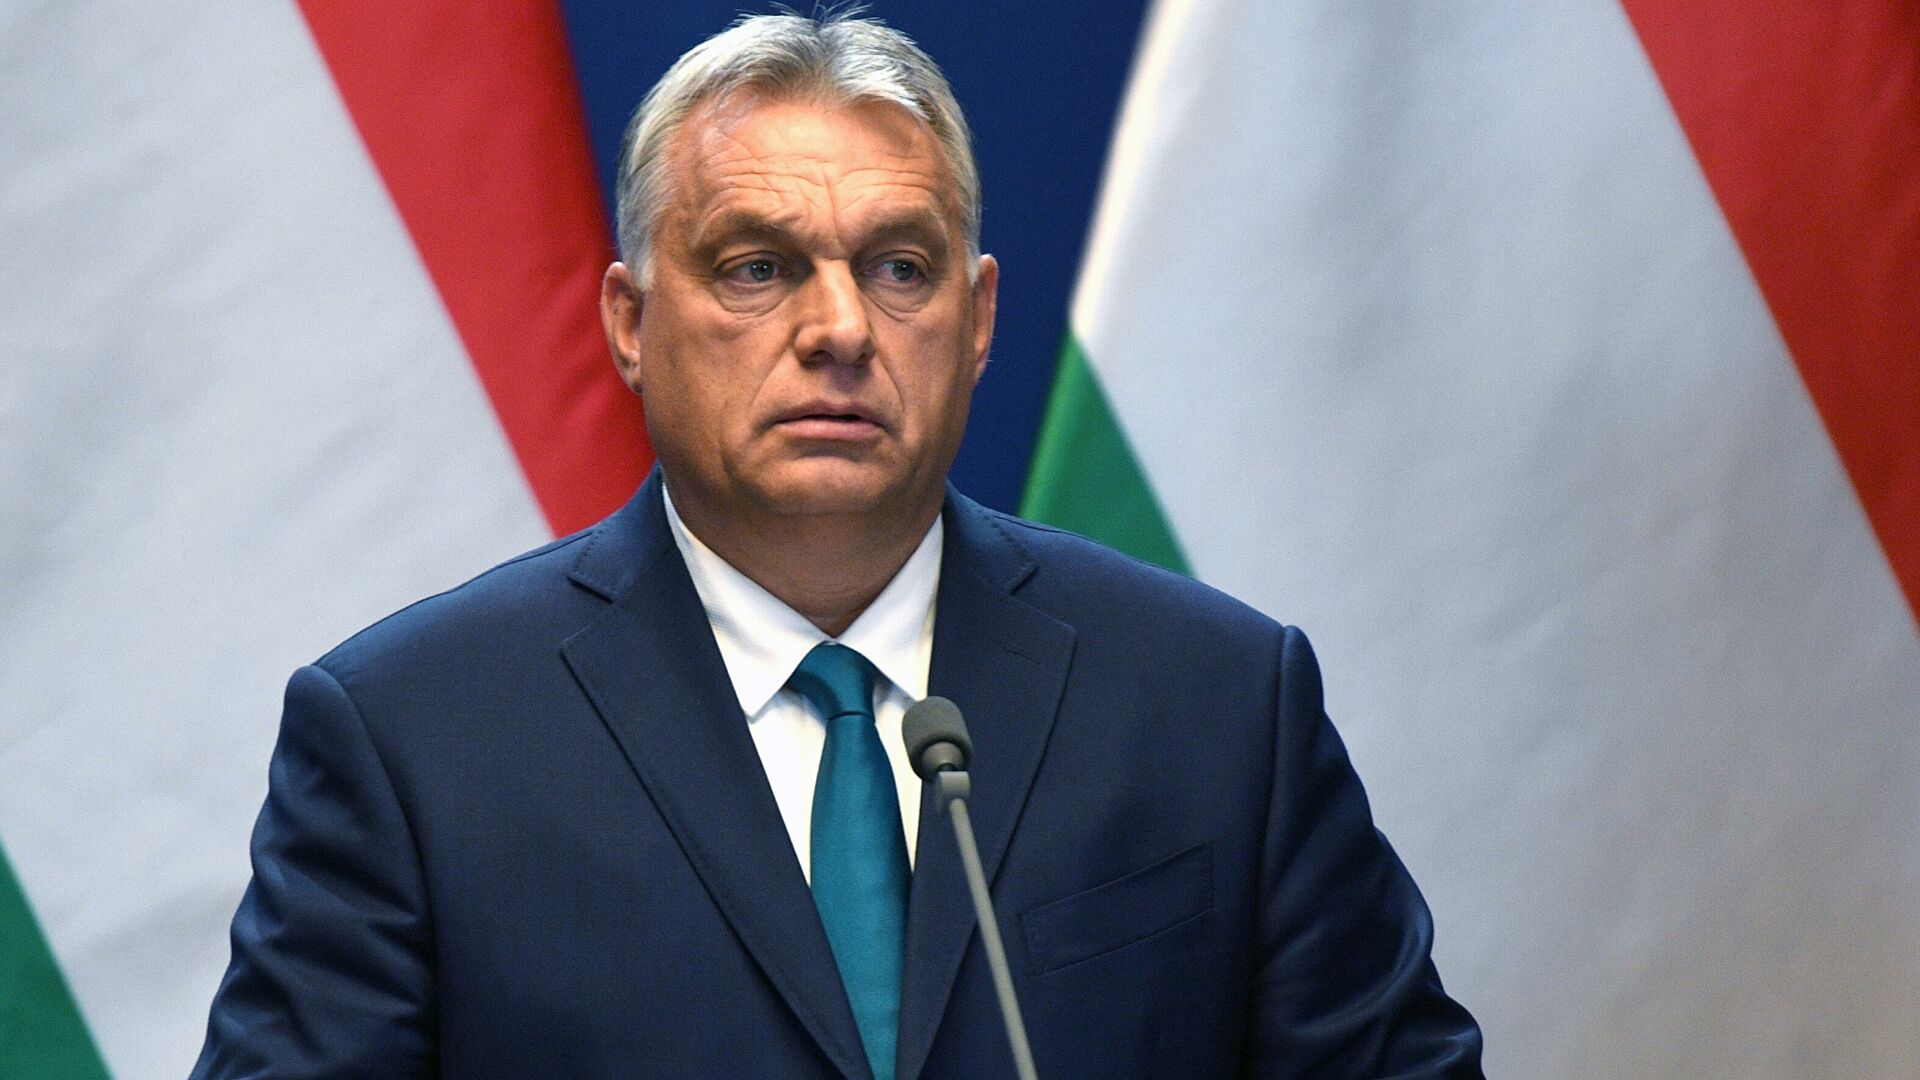 Öt dolog 2022-re, ami jelentősen javíthatna Magyarország kilátásain